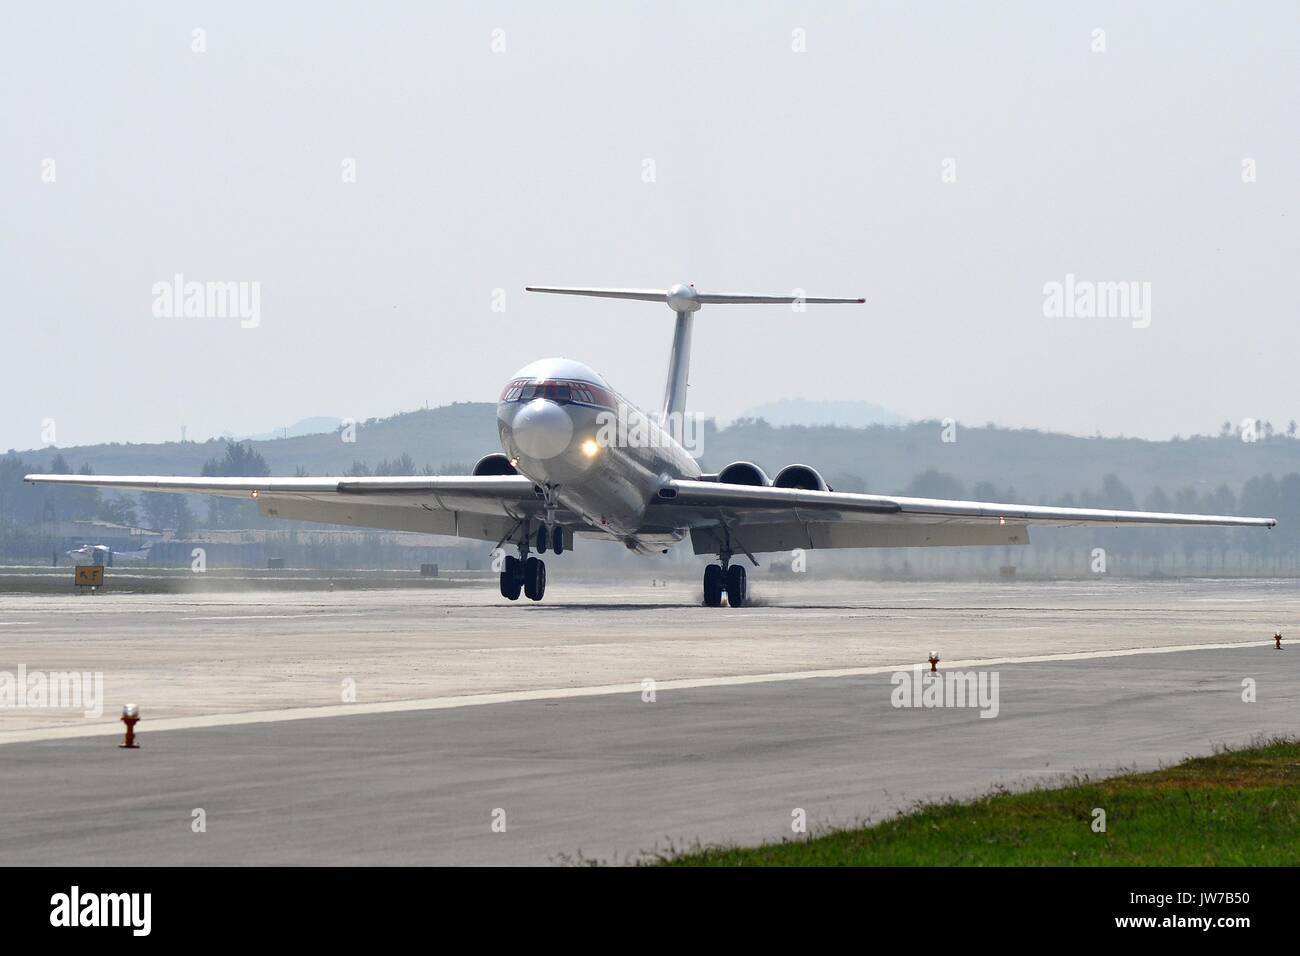 AIR KORYO ILYUSHIN IL-62M AT PYONGYANG Stock Photo